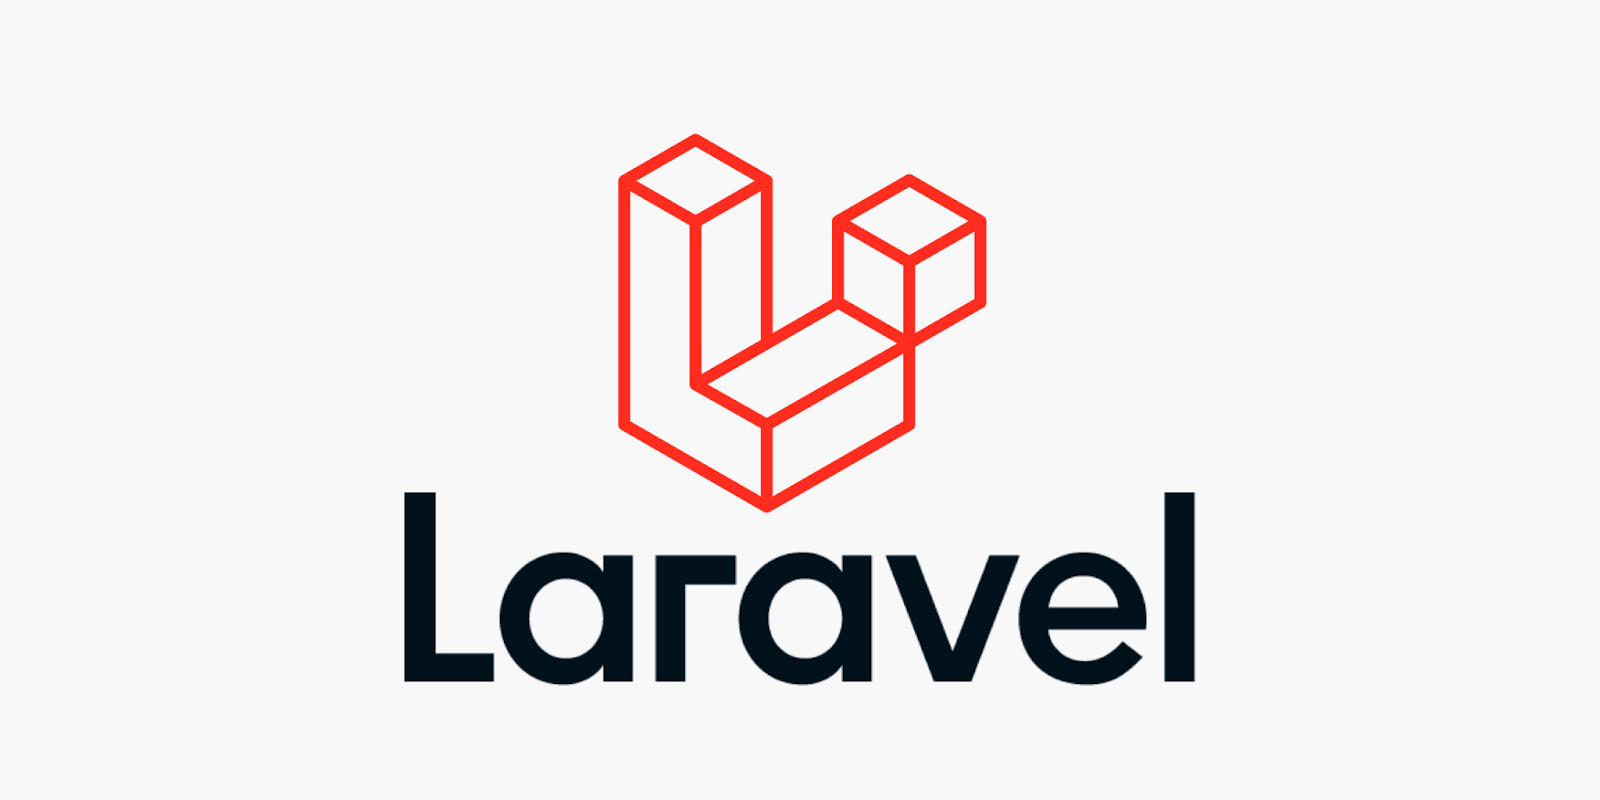 Laravel-logoet med ordet i sort og logoet i rødt oven på Laravel-ordet.